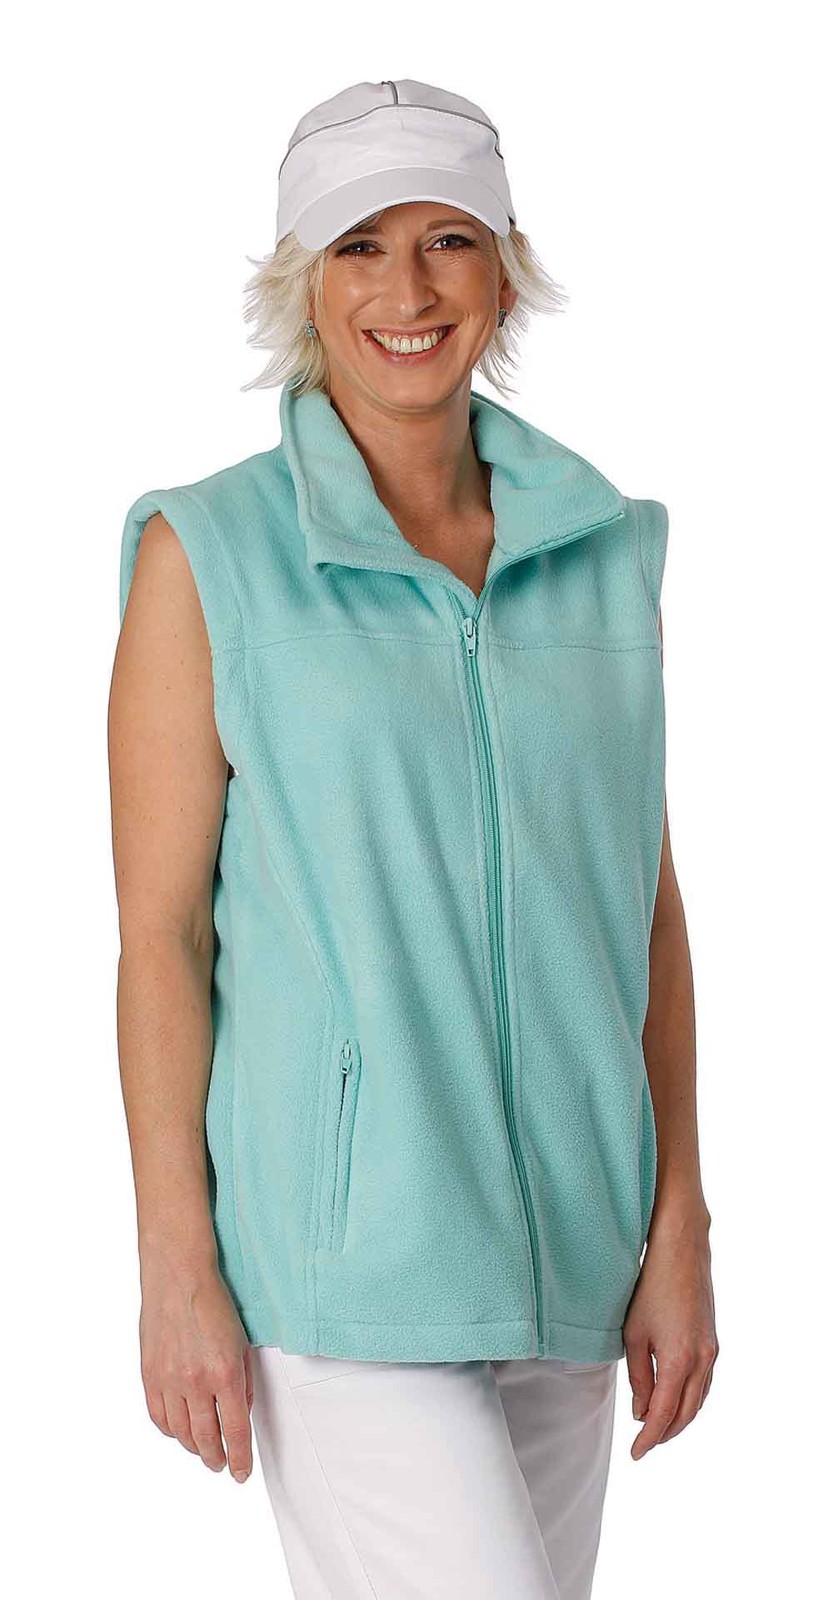 Fleece vesta Vorma Lady dámska - veľkosť: S, farba: zelená